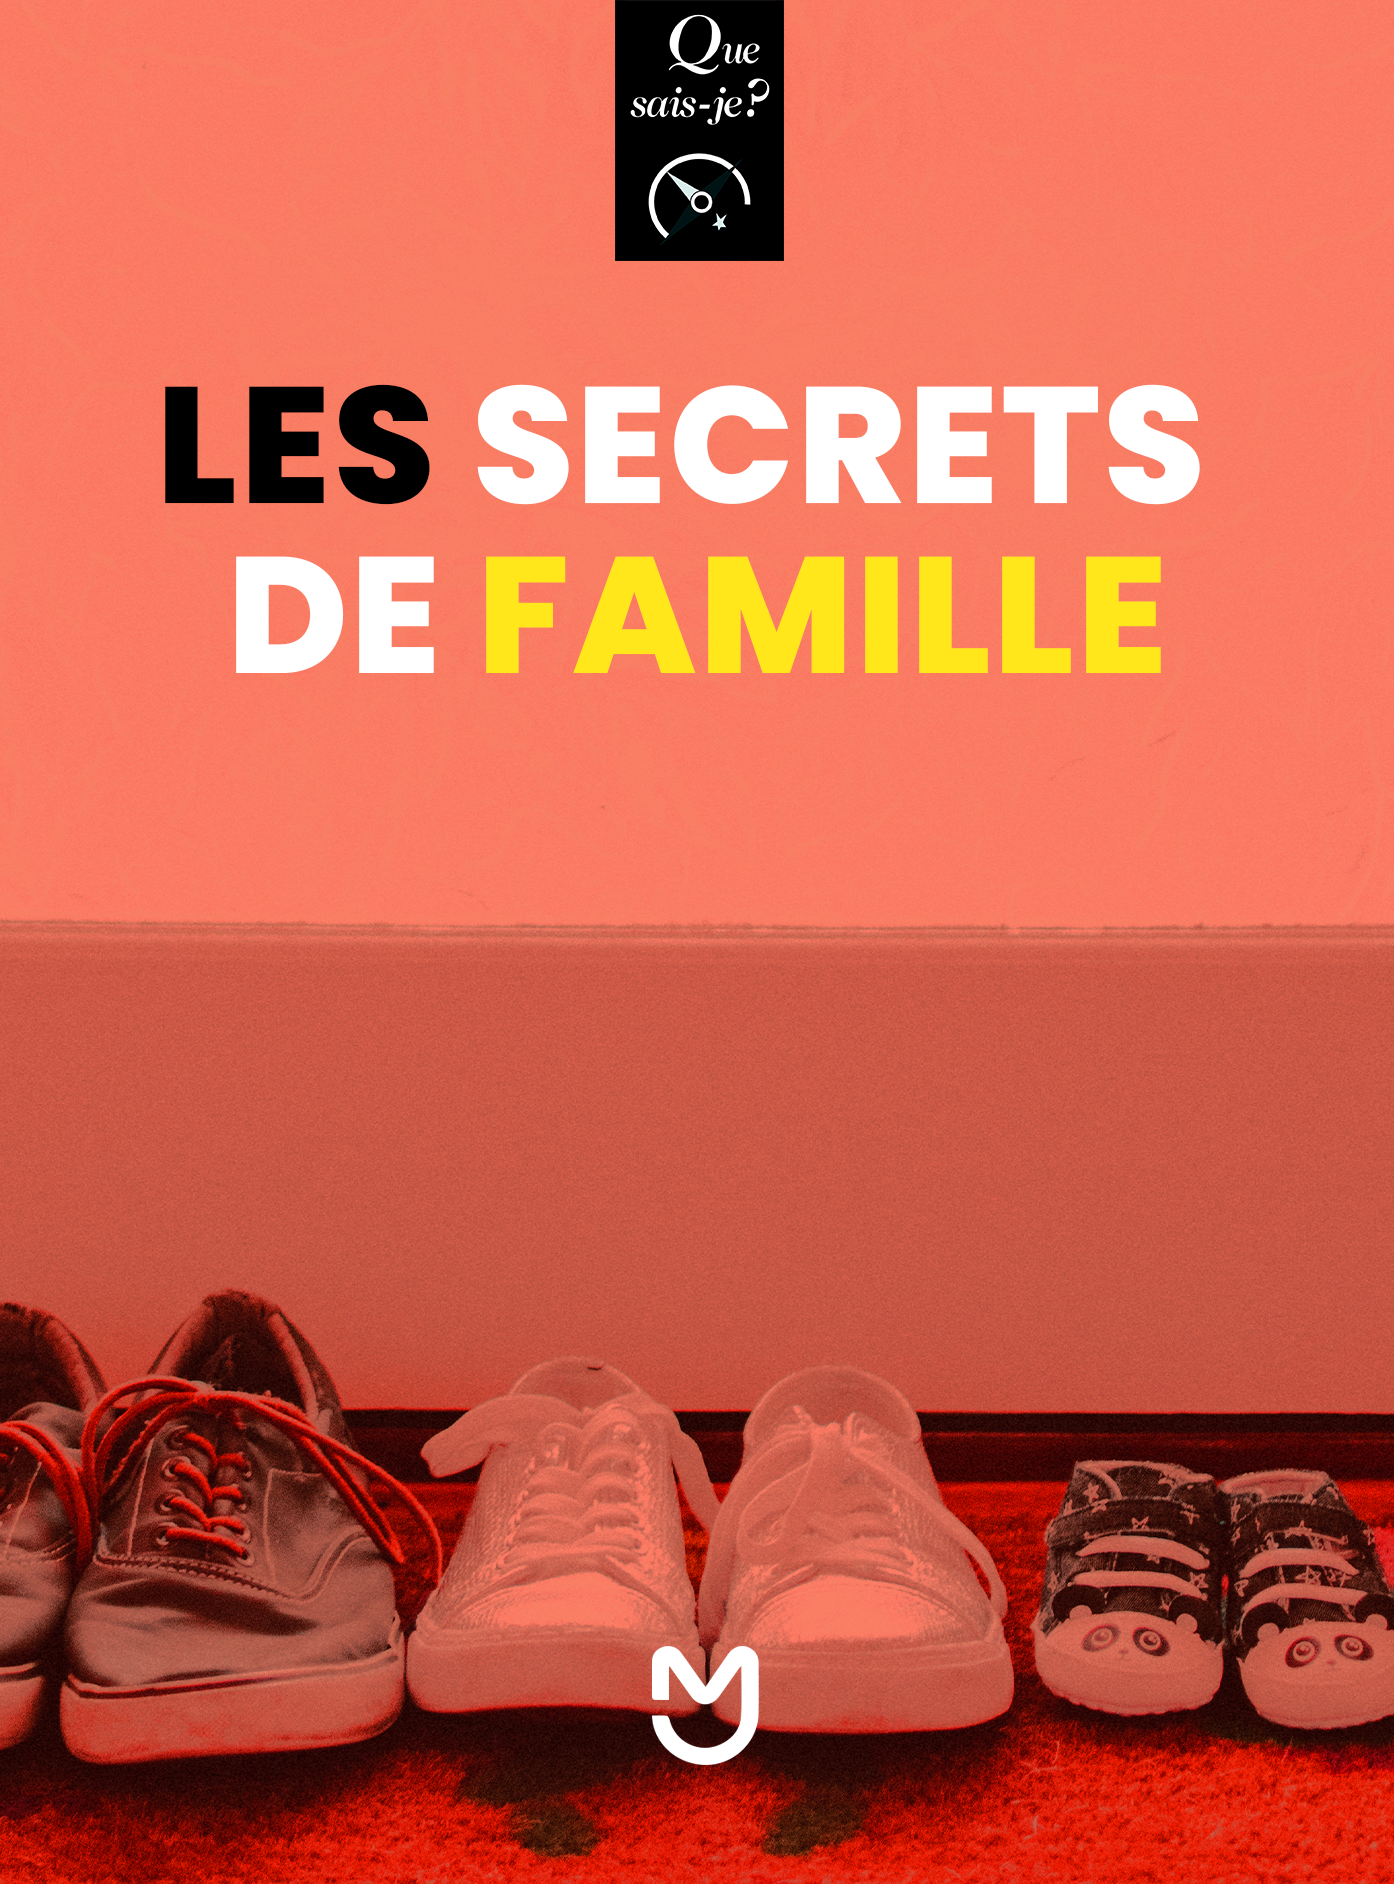 Les secrets de famille